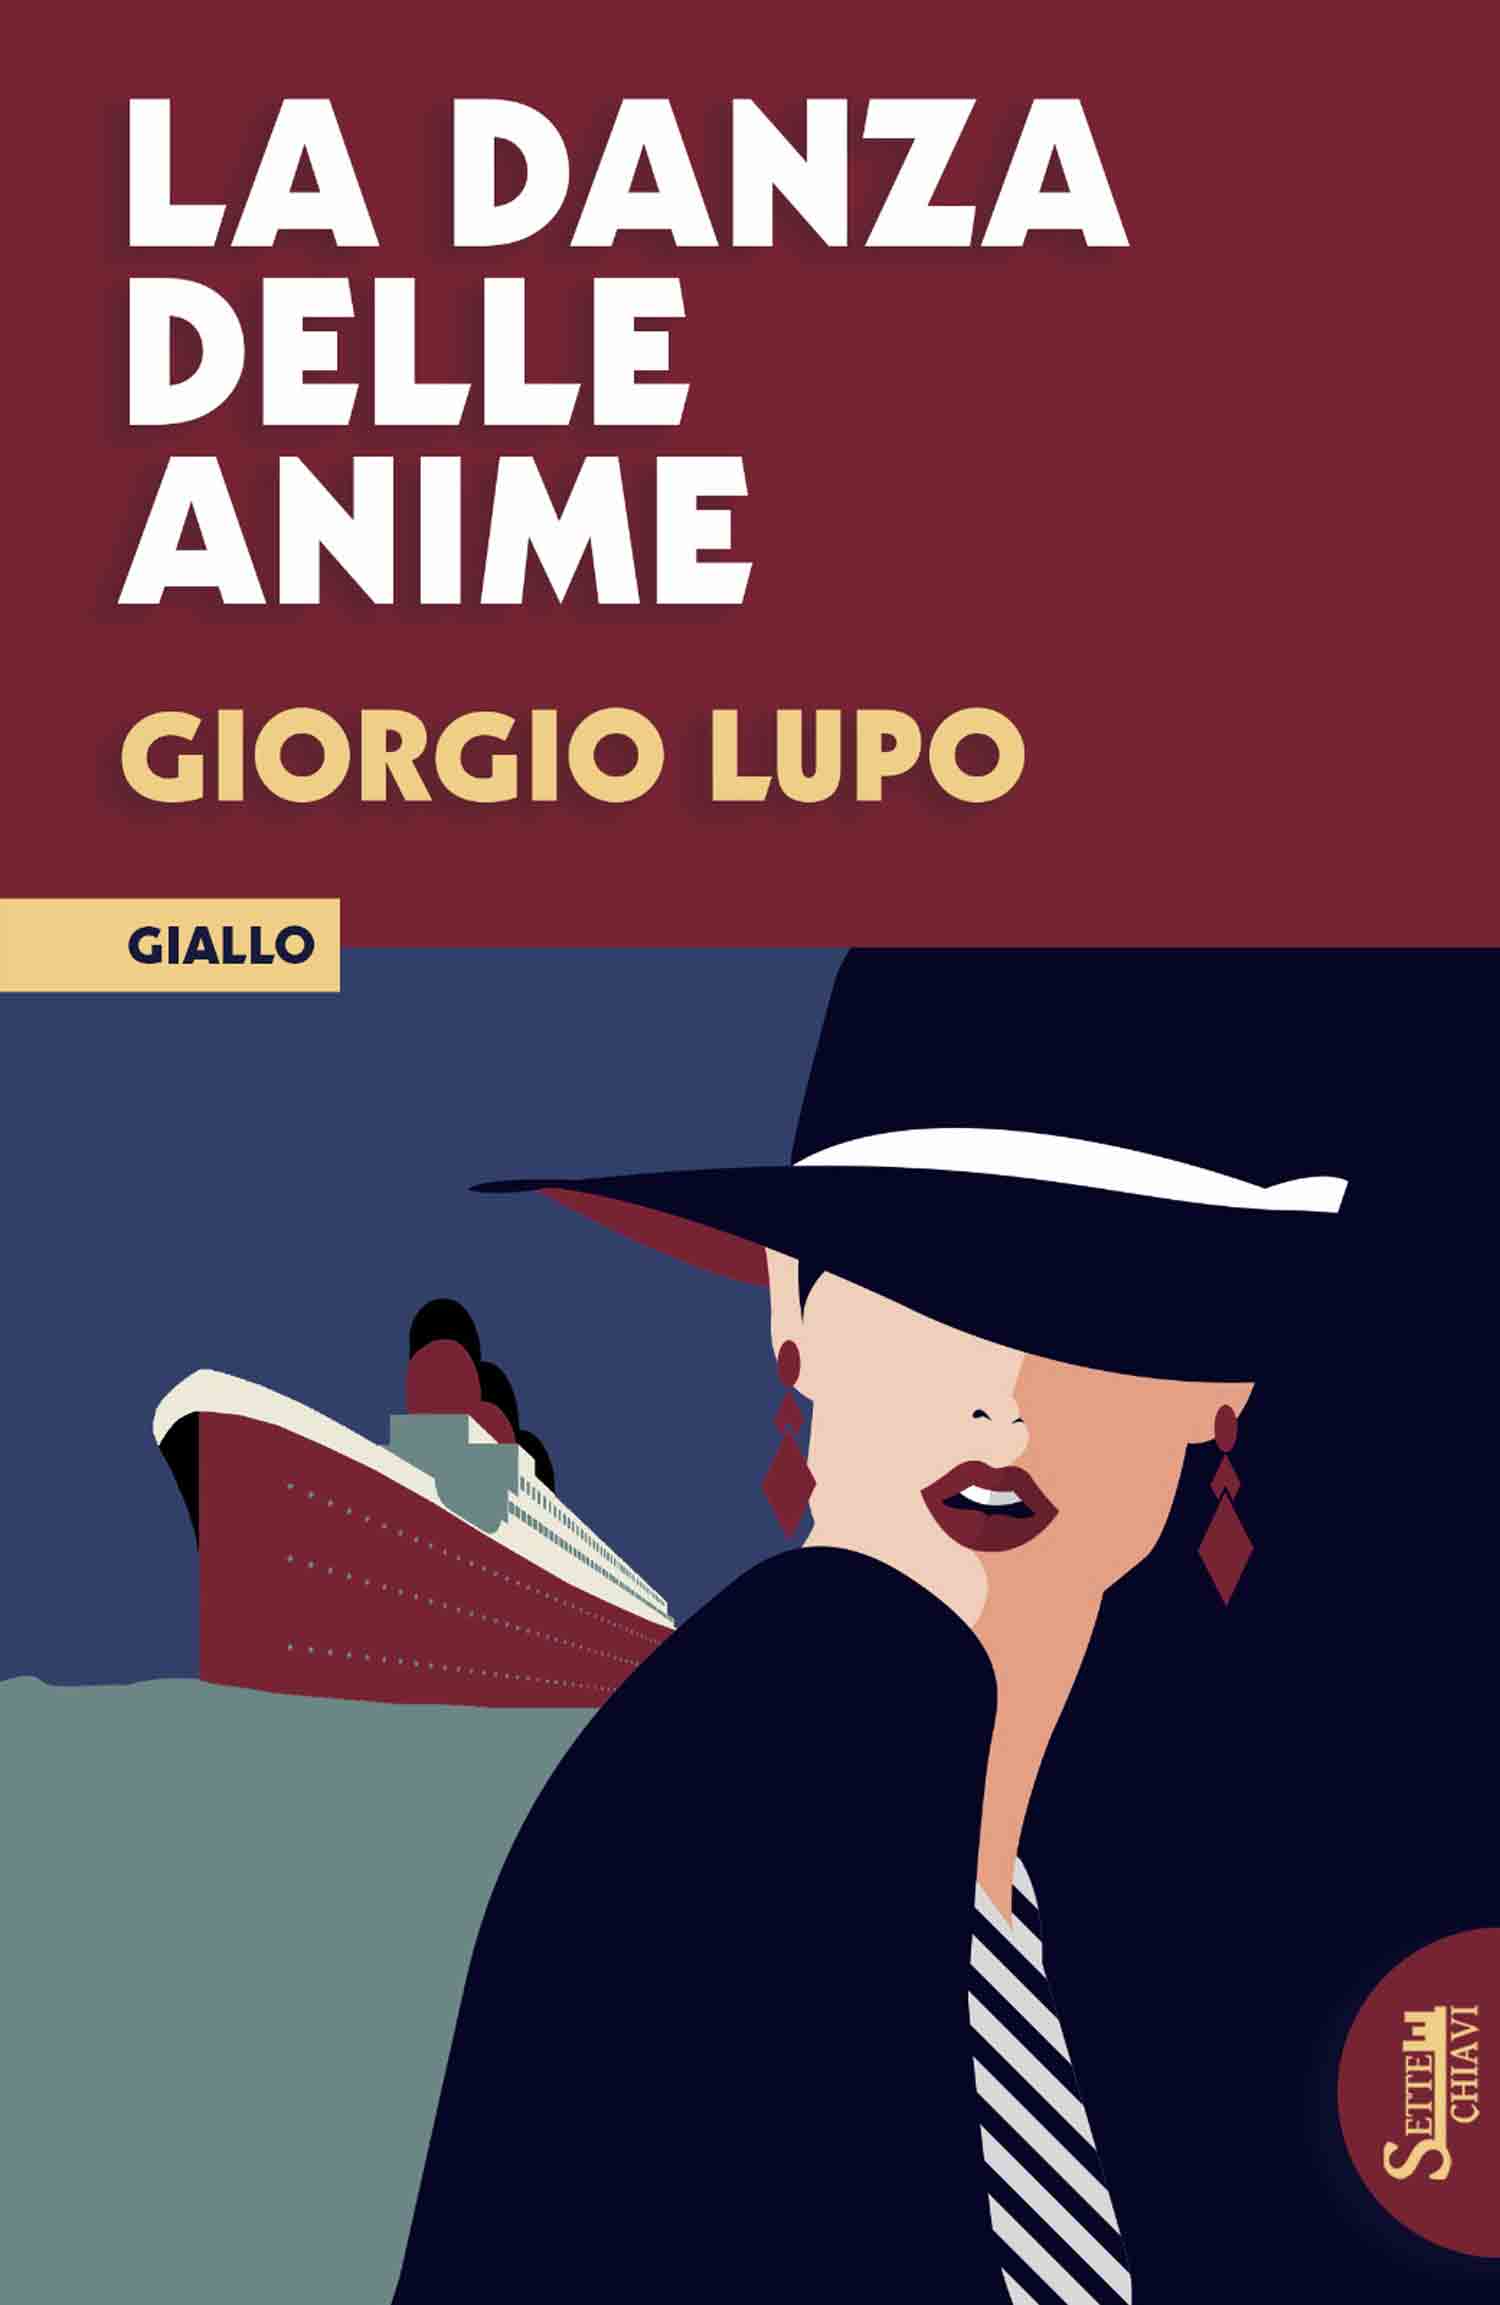 La copertina del libro di Giorgio Lupo